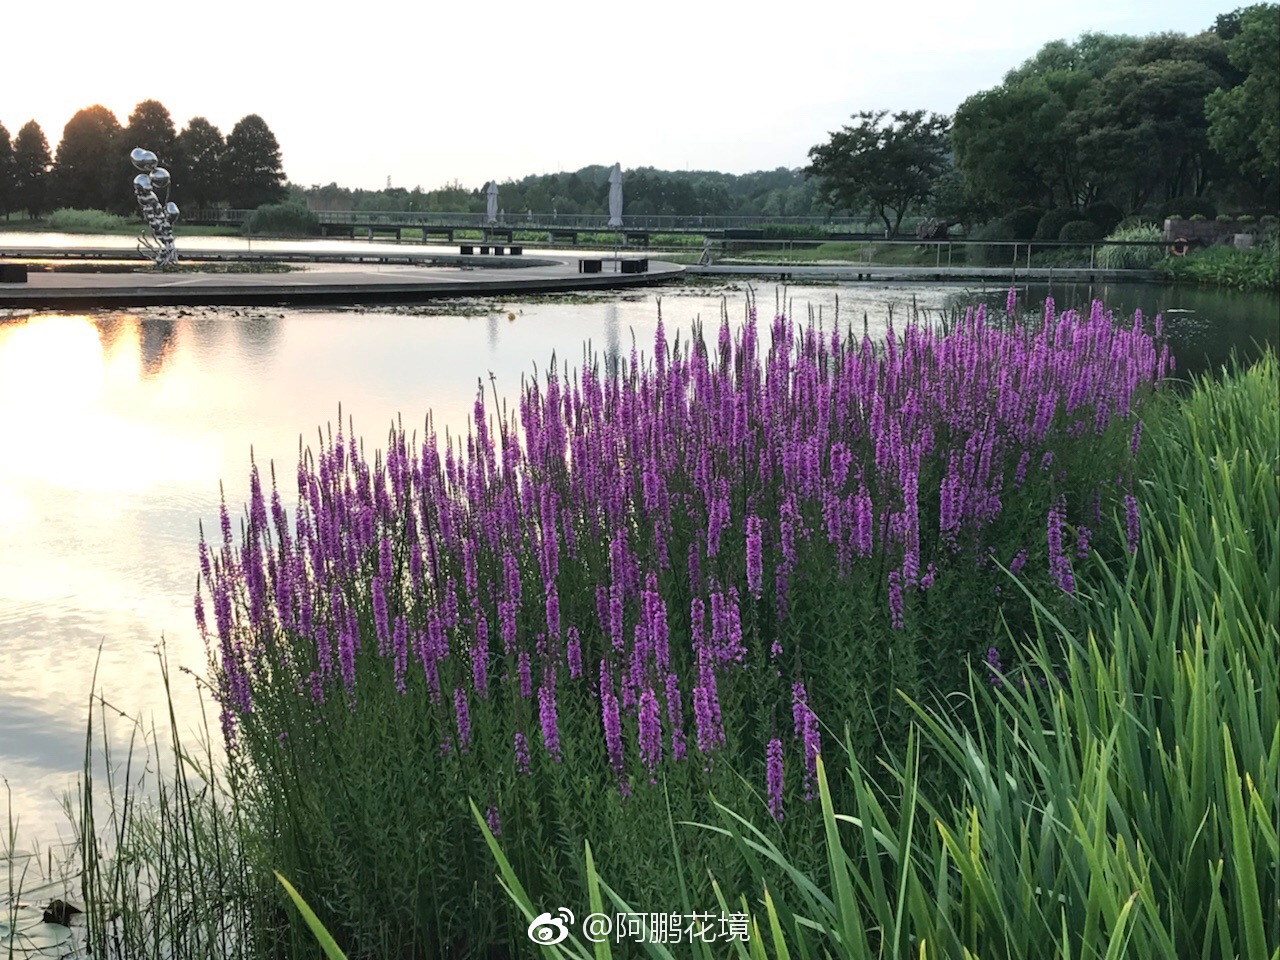 紫叶小檗图片_植物风景的紫叶小檗图片大全 - 花卉网